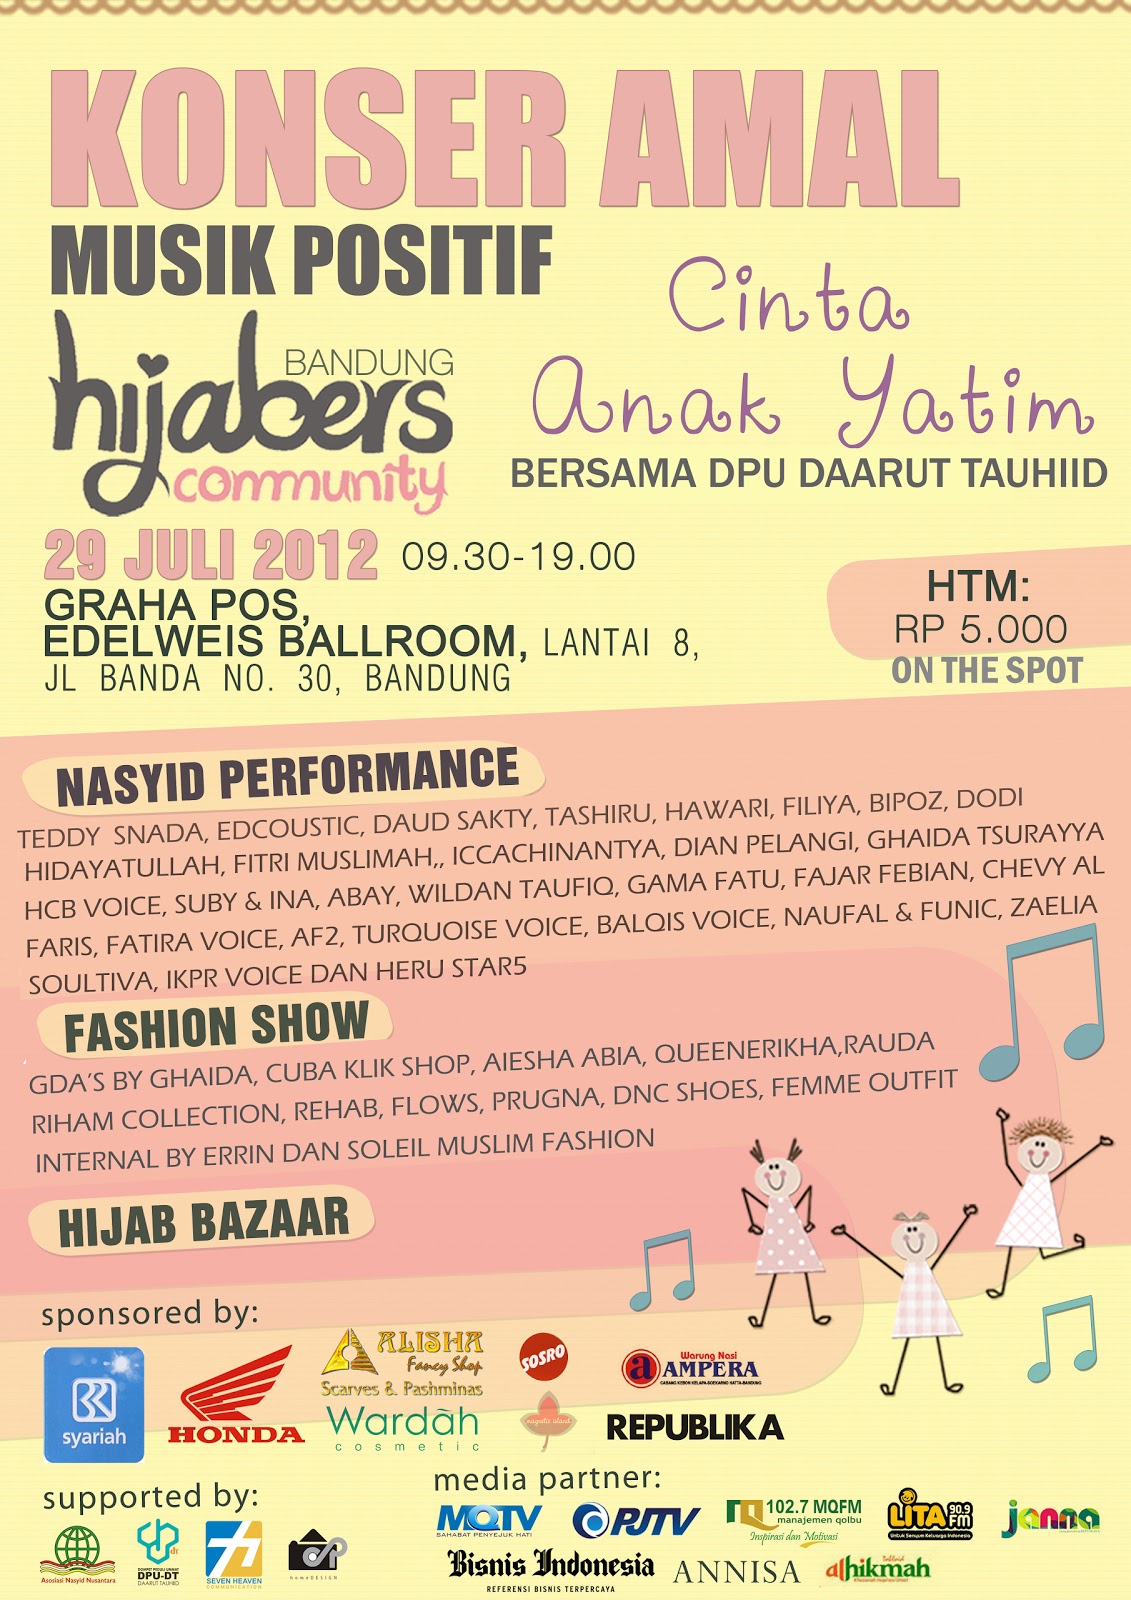  HC Konser Amal Musik Positif Hijabers Community Bandung 